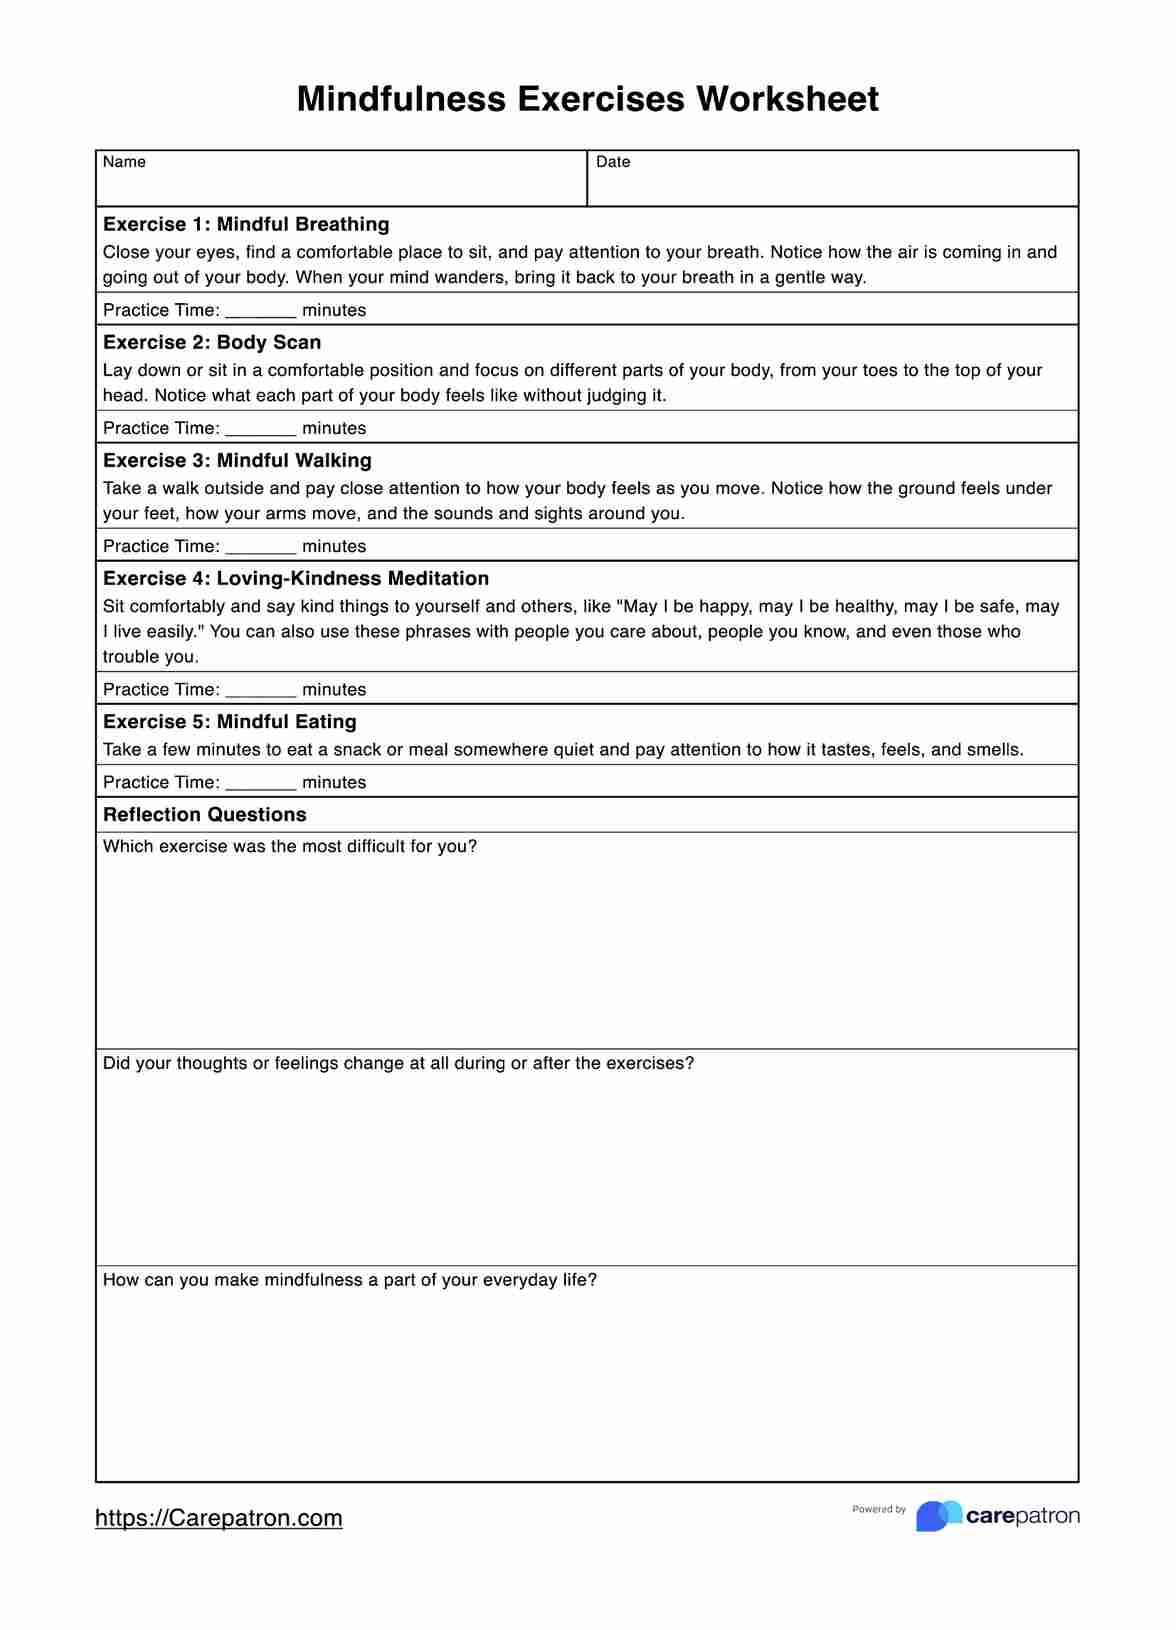 Mindfulness Exercises Worksheets PDF Example